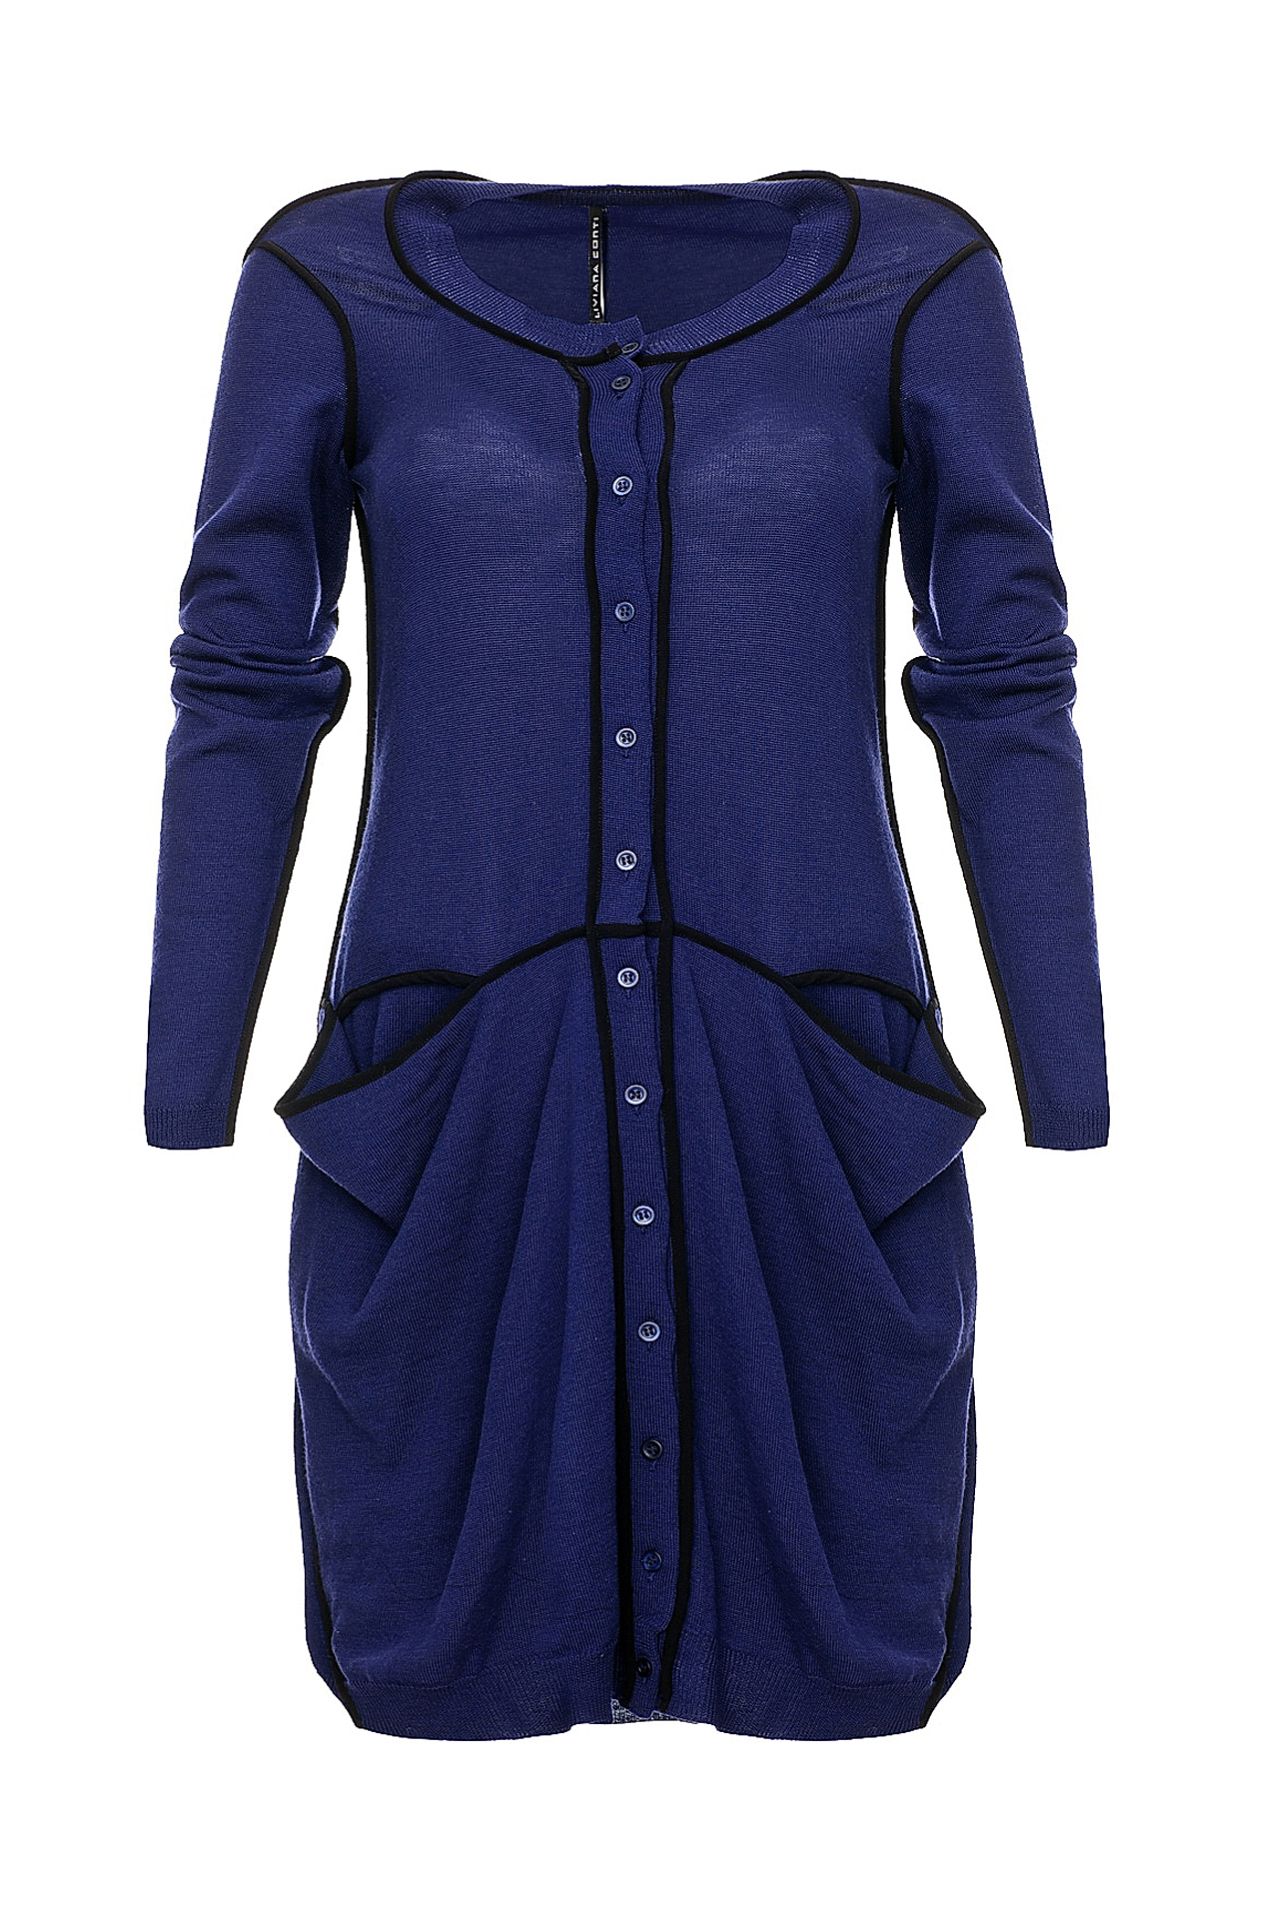 Одежда женская Платье LIVIANA CONTI (F1A006/12.1). Купить за 14240 руб.